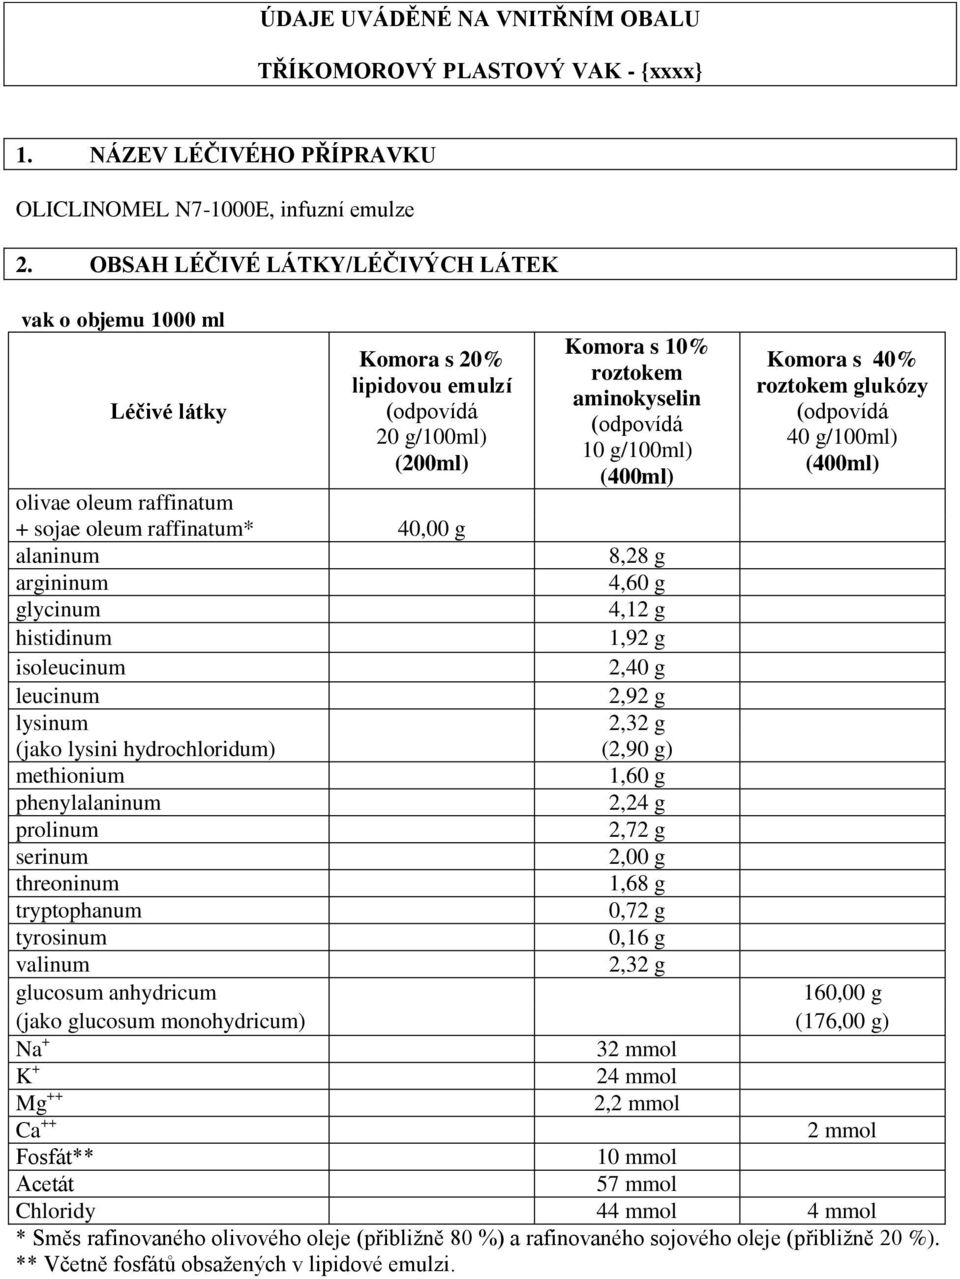 glycinum histidinum isoleucinum leucinum lysinum Komora s 10% roztokem aminokyselin 10 g/100ml) (400ml) Komora s 40% roztokem glukózy 40 g/100ml) (400ml) 8,28 g 4,60 g 4,12 g 1,92 g 2,40 g 2,92 g